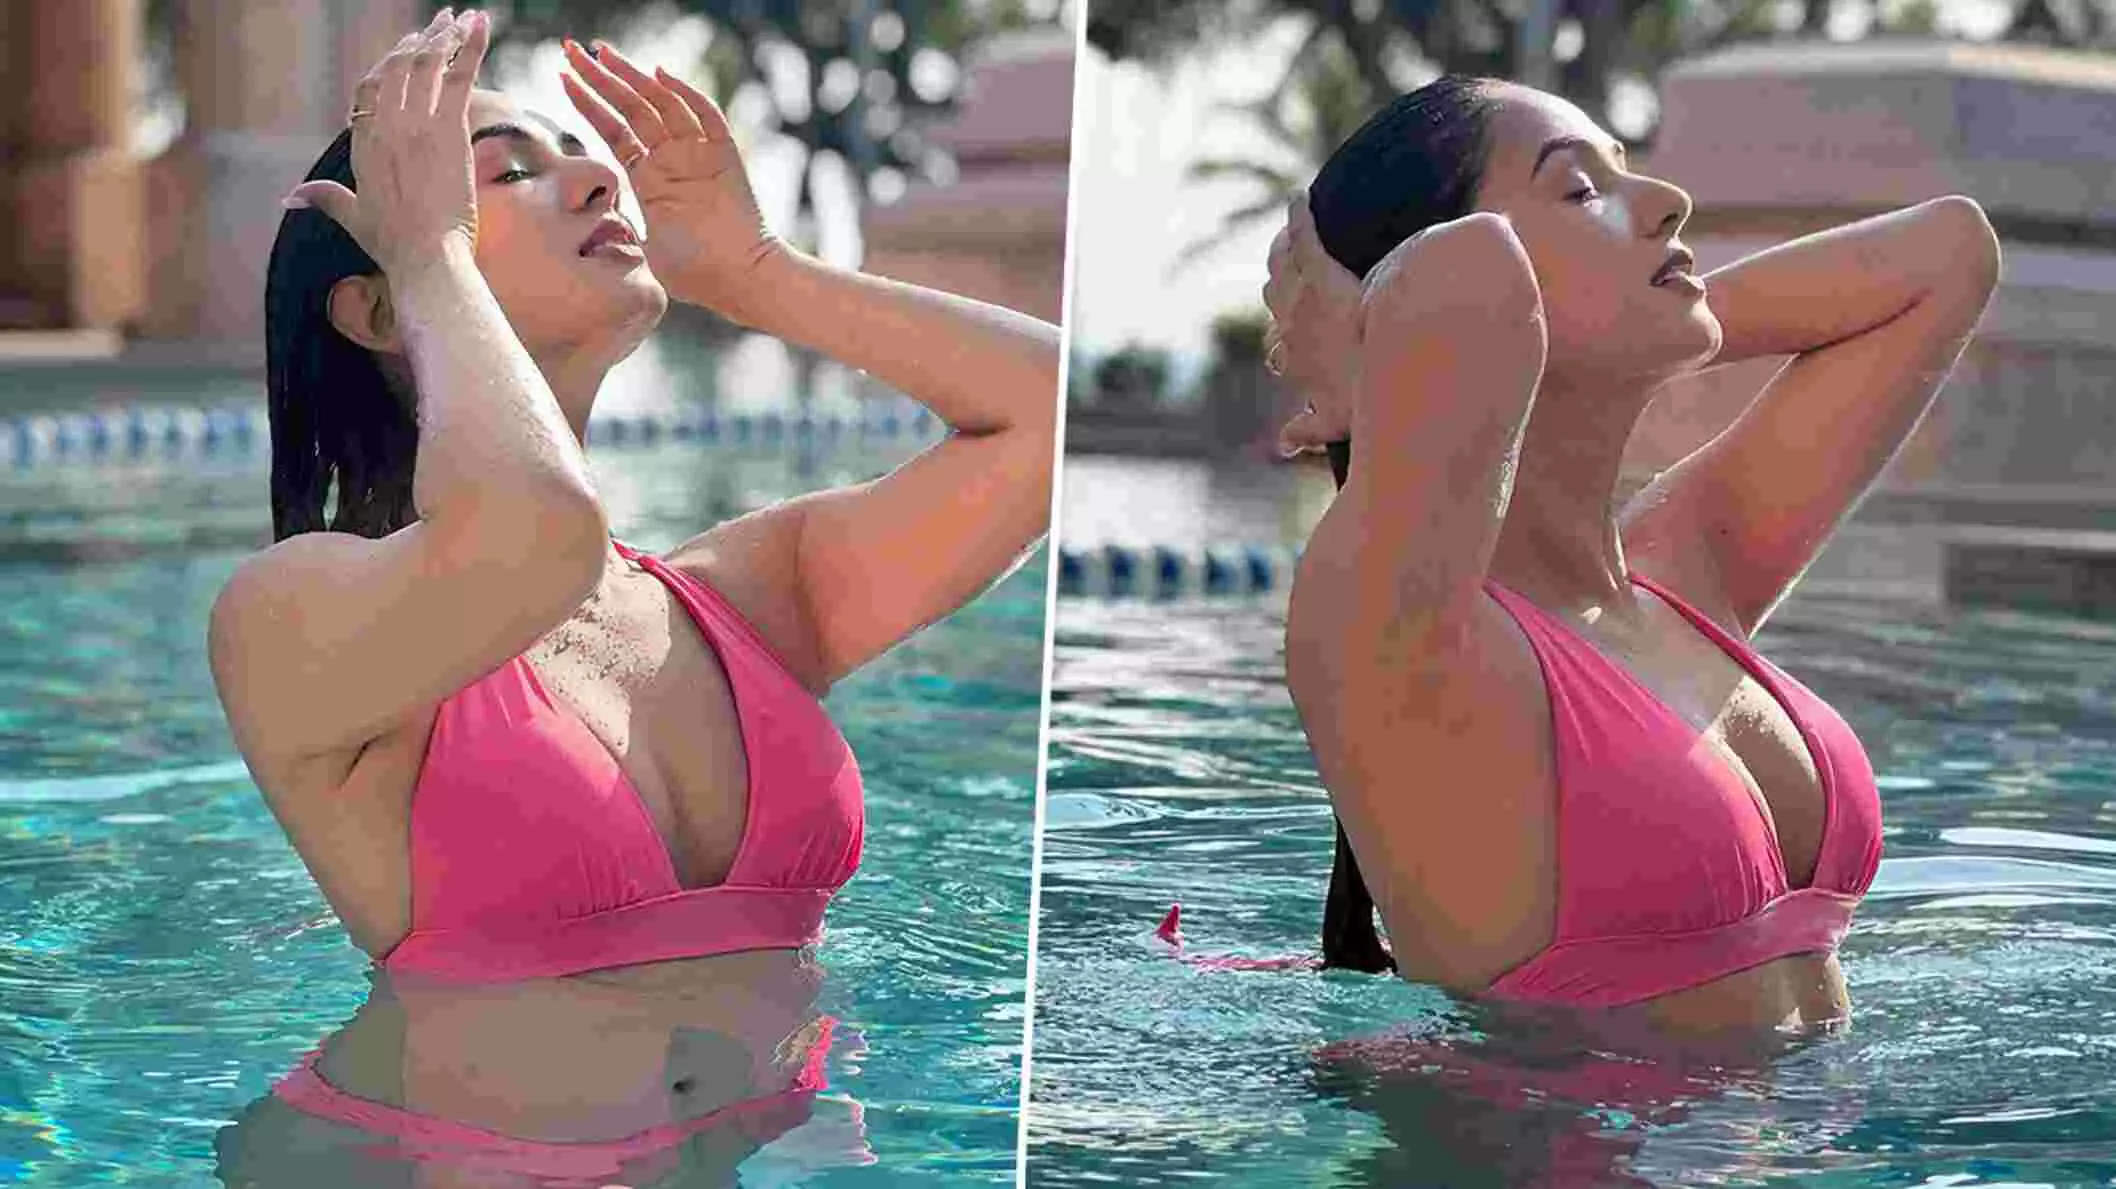 Sonal Chauhan Sexy Video Photo: Sonal Chauhan ने पिंक बिकिनी पहनकर पानी में दिखाया सिजलिंग हॉट अवतार, देखें जन्नत एक्ट्रेस की ये Sexy Photos